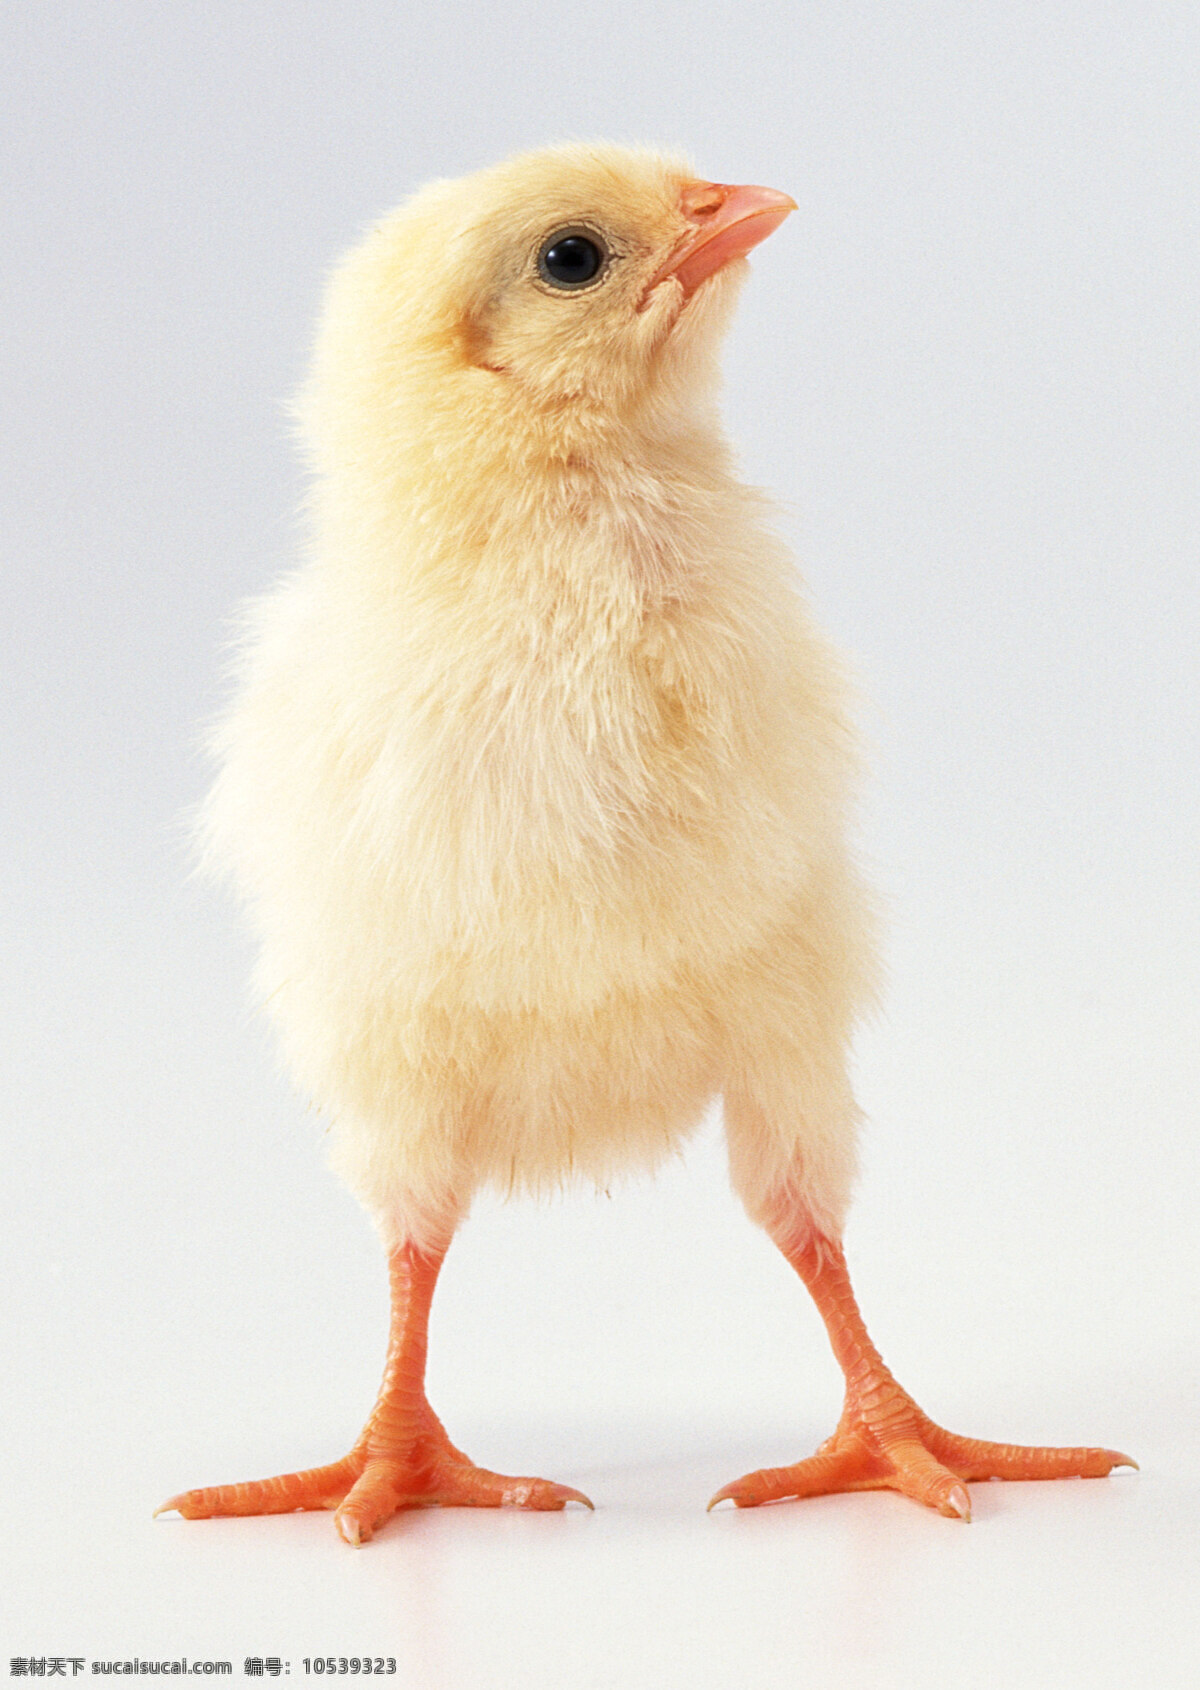 小鸡素材 小鸡 鸡雏 小黄鸡 鸡仔 鸡崽 雏鸡 萌态 生物世界 家禽家畜